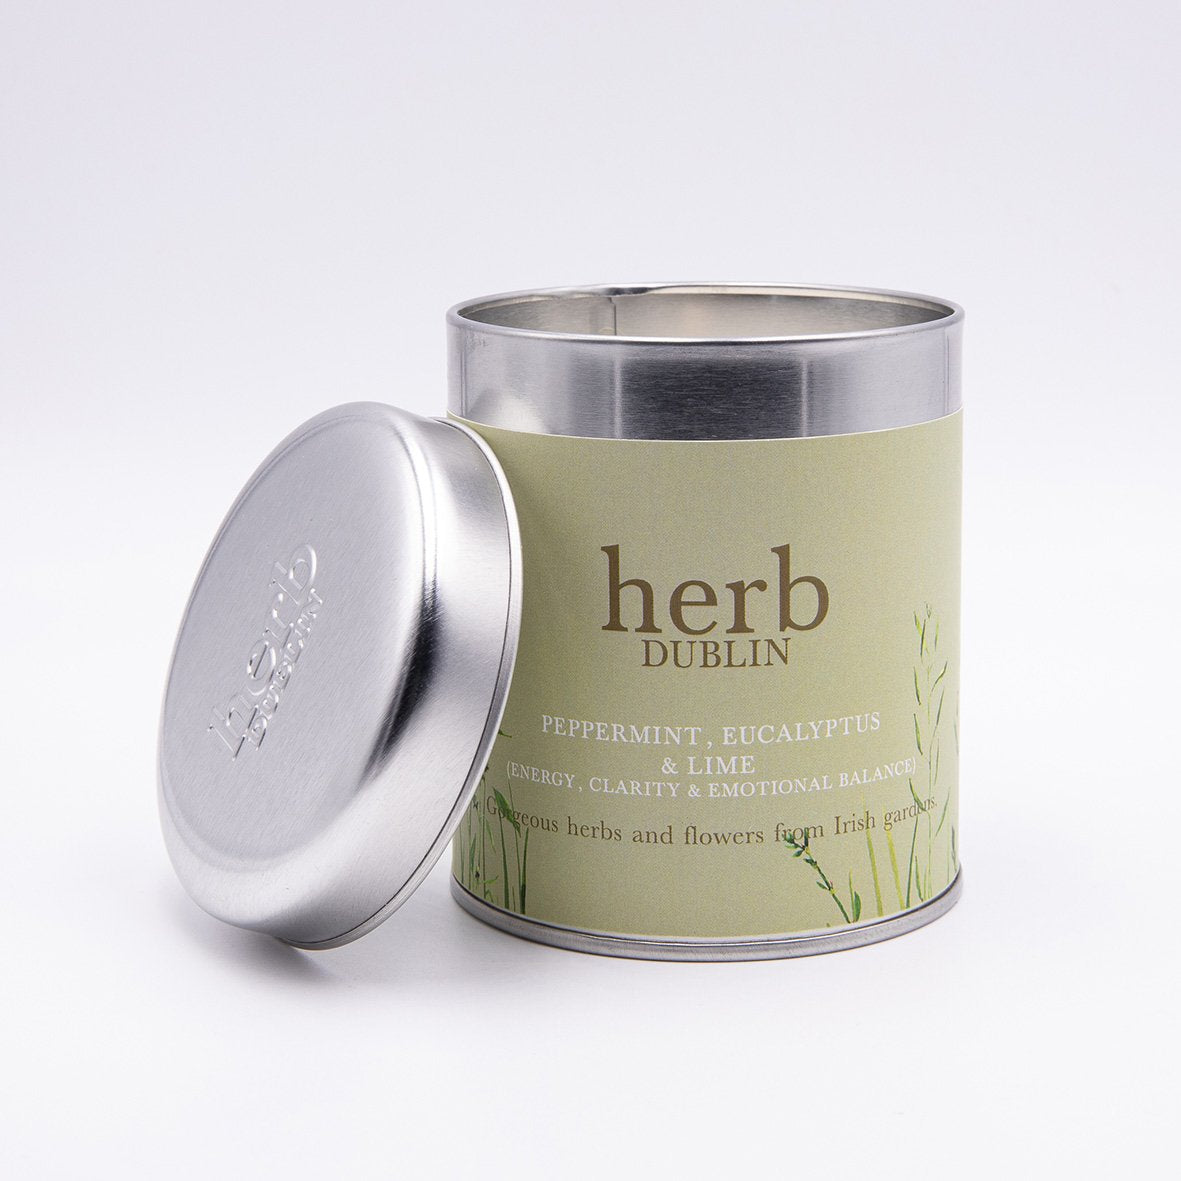 Herb Dublin - Peppermint, Eucalyptus & Lime Tin Candle